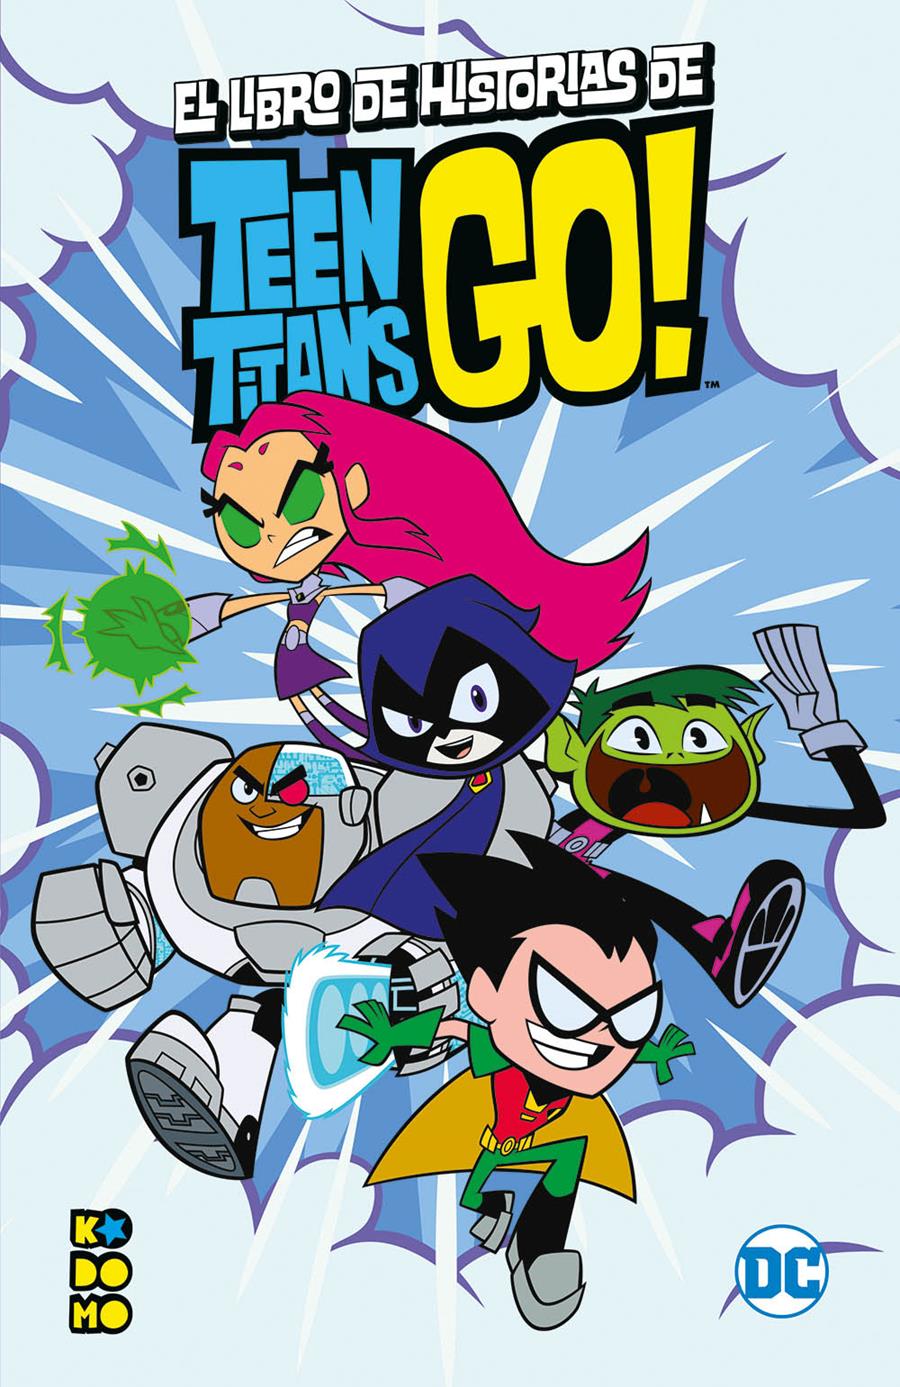 El libro de historias de los Teen Titans Go! | N0721-ECC40 | H. Caldwell Tanner / Jennifer Fox / Lucy Rosen / Magnolia Belle | Terra de Còmic - Tu tienda de cómics online especializada en cómics, manga y merchandising